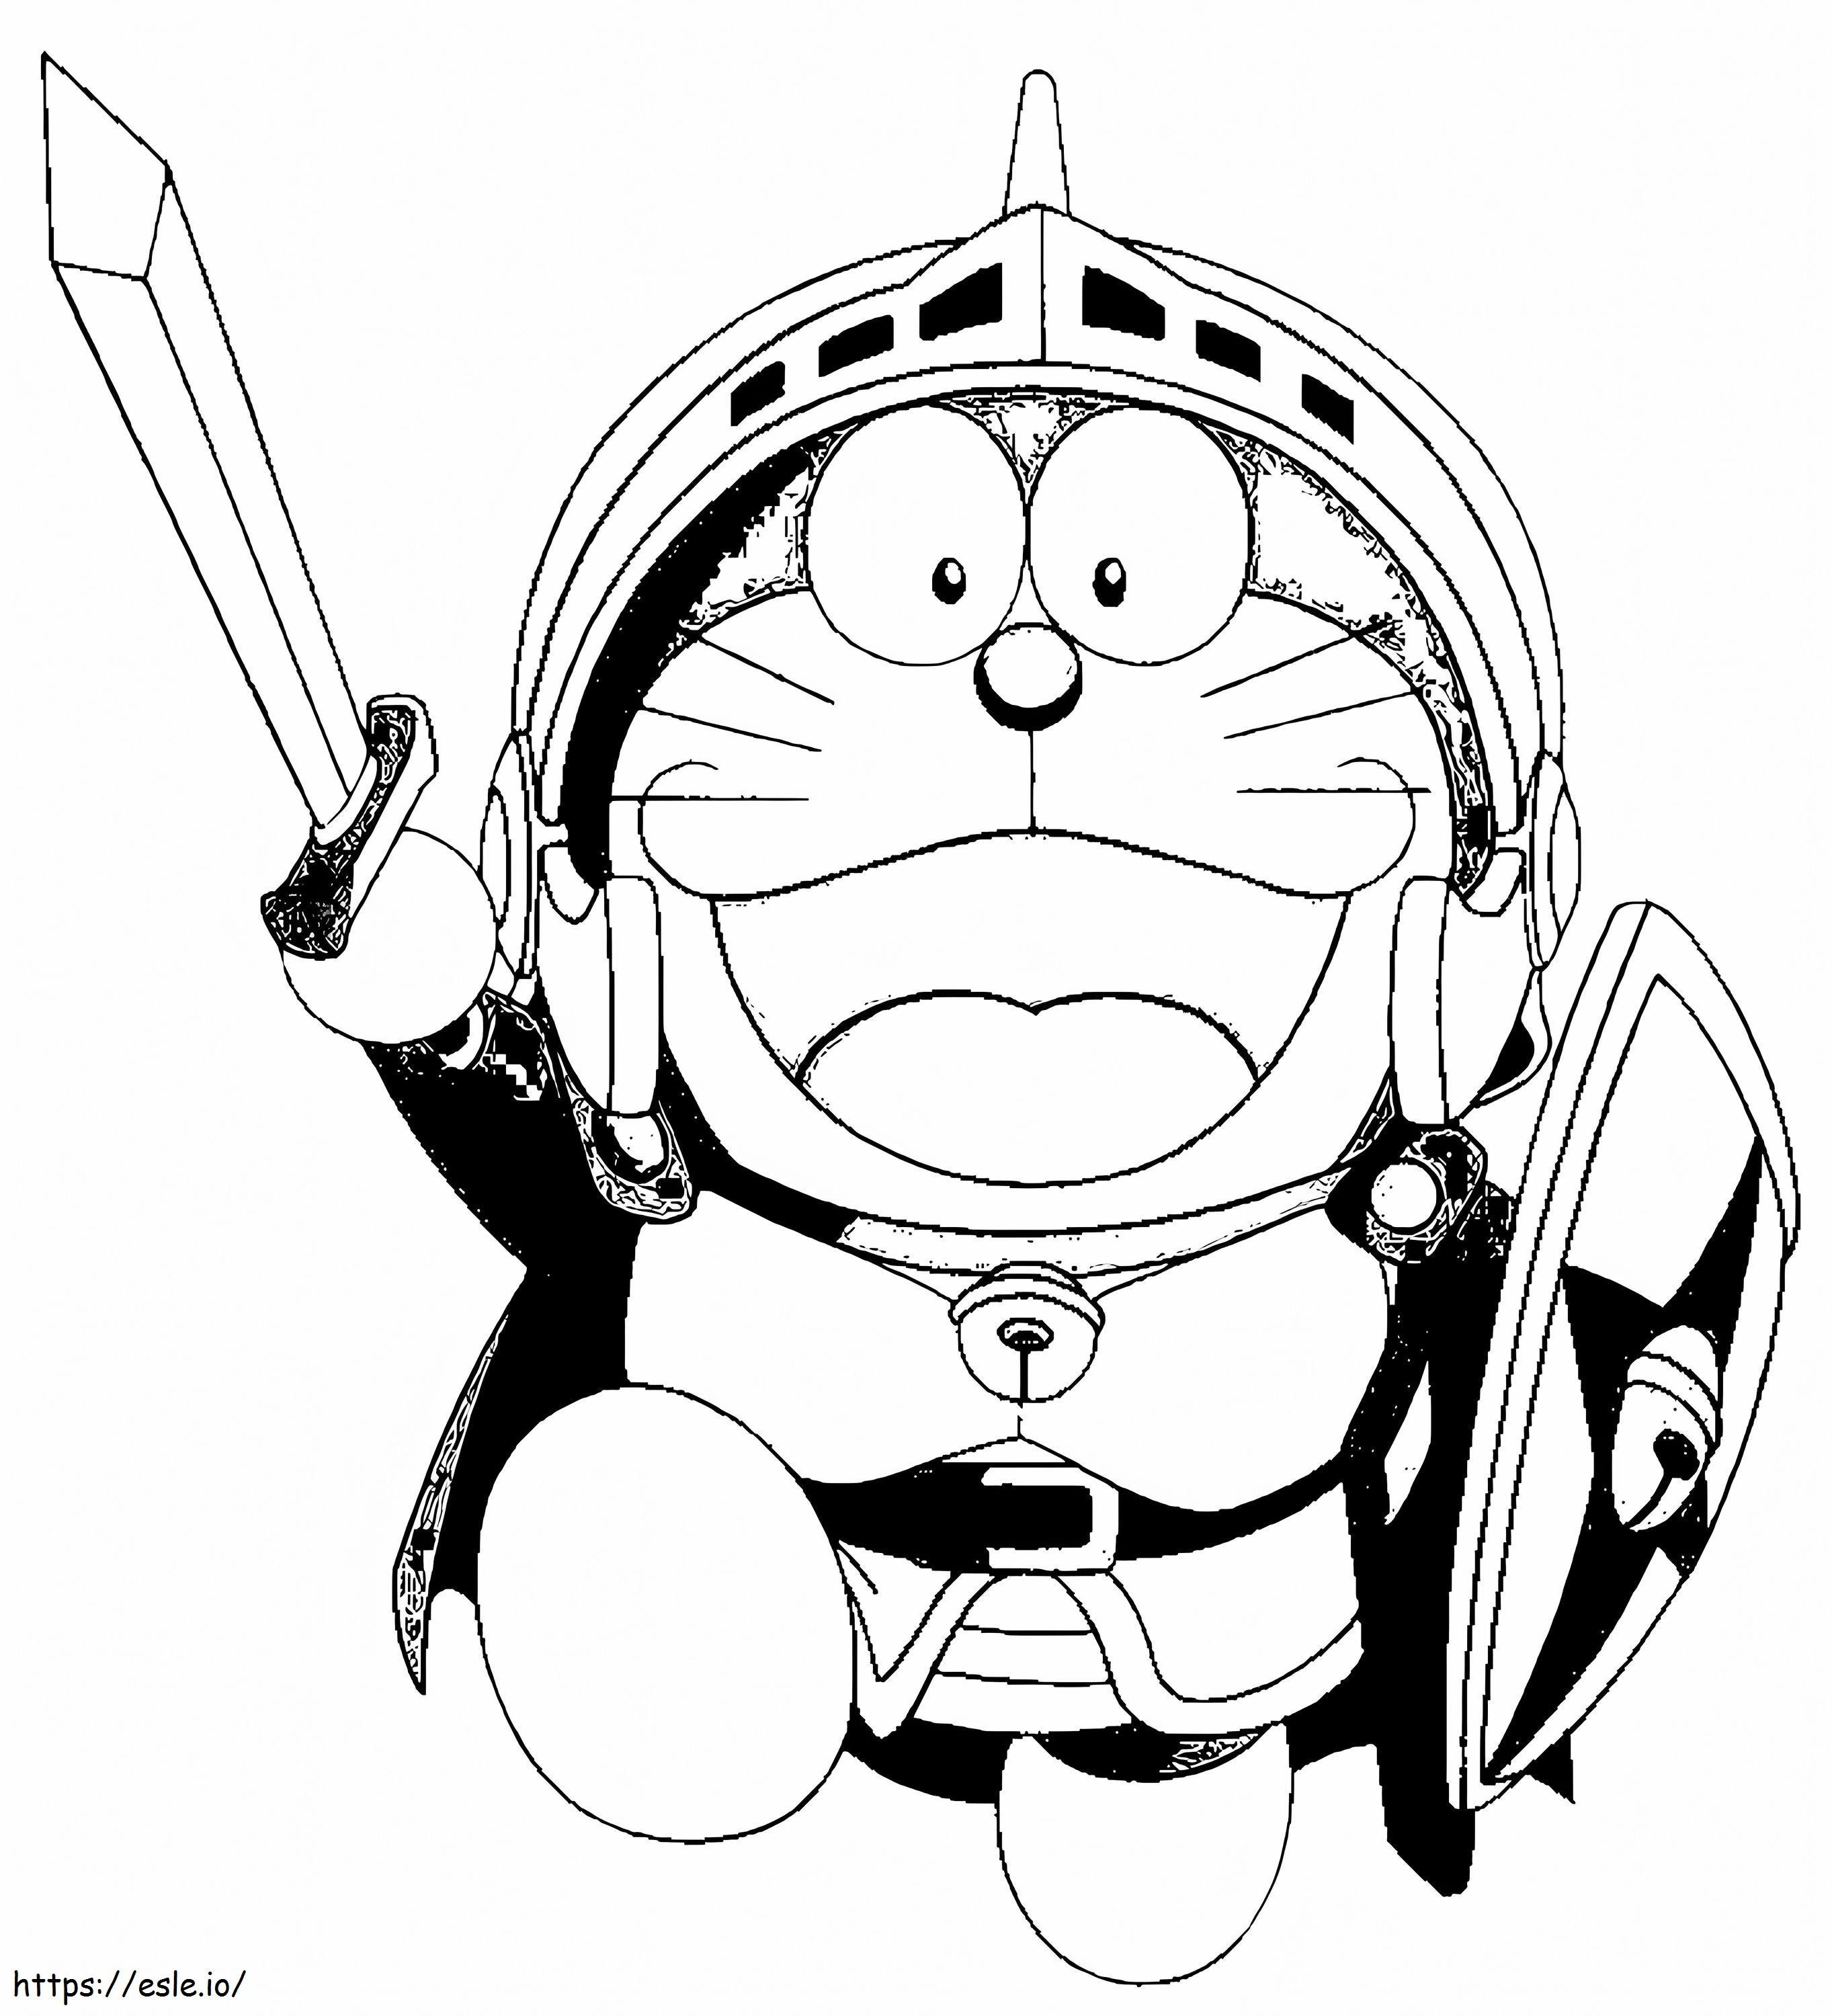 1540782317 Doraemon, kirjoittanut Sophia värityskuva